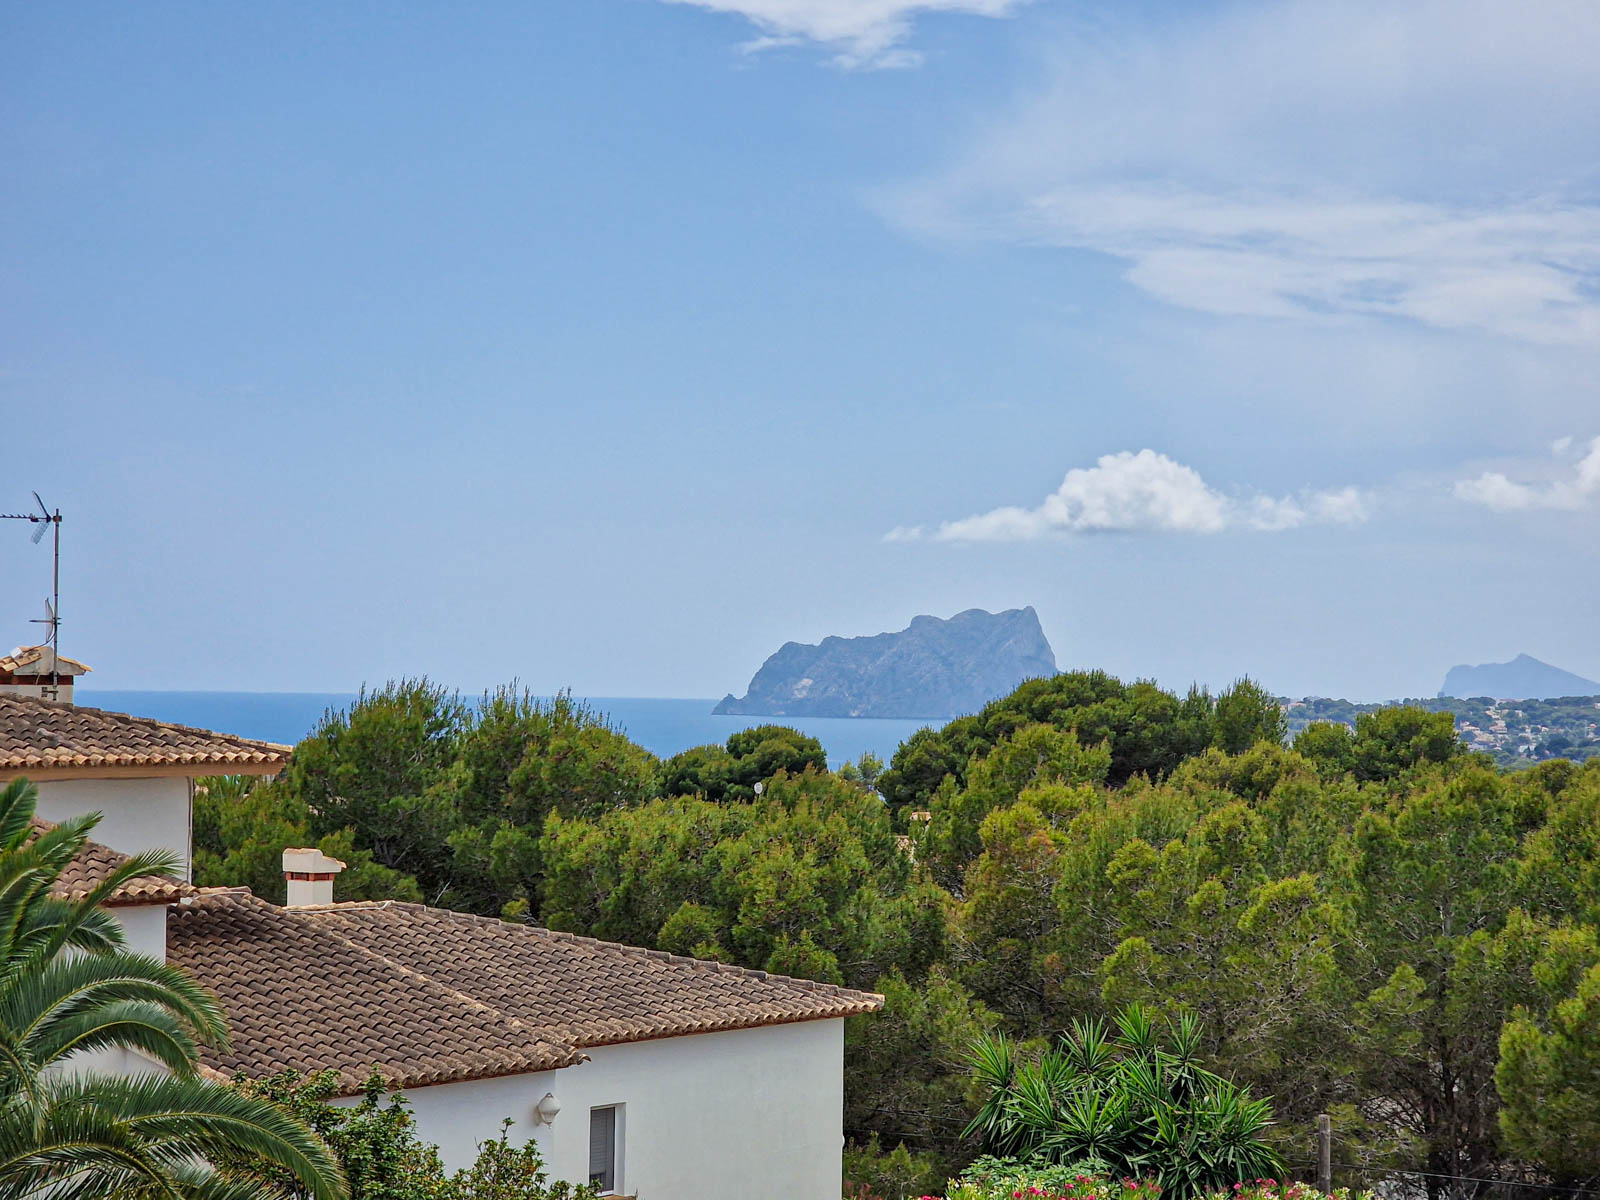 Renovated Ibiza-style villa for sale in Moraira